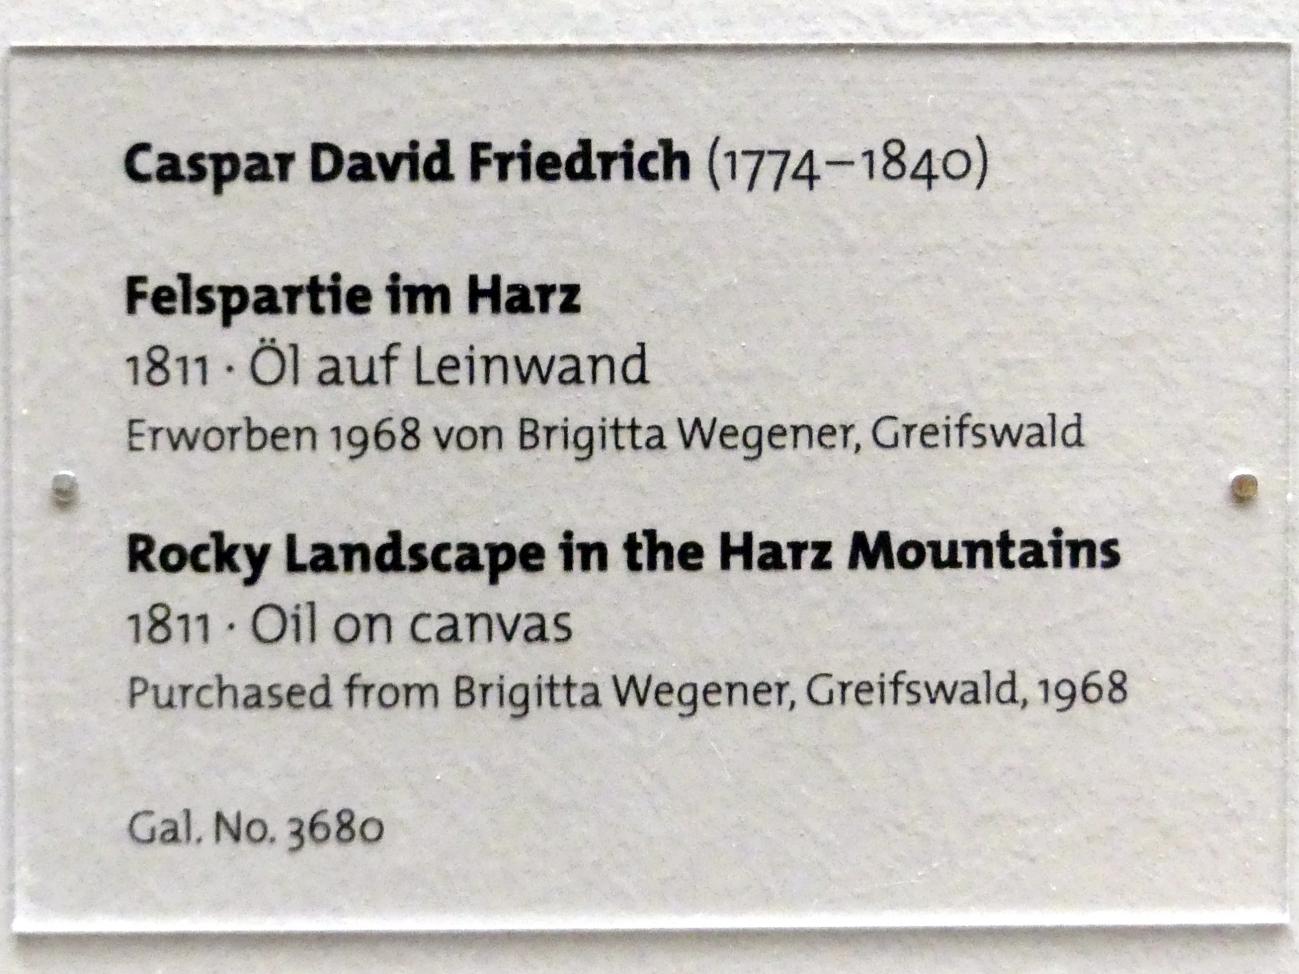 Caspar David Friedrich (1798–1836), Felspartie im Harz, Dresden, Albertinum, Galerie Neue Meister, 2. Obergeschoss, Saal 2, 1811, Bild 2/2